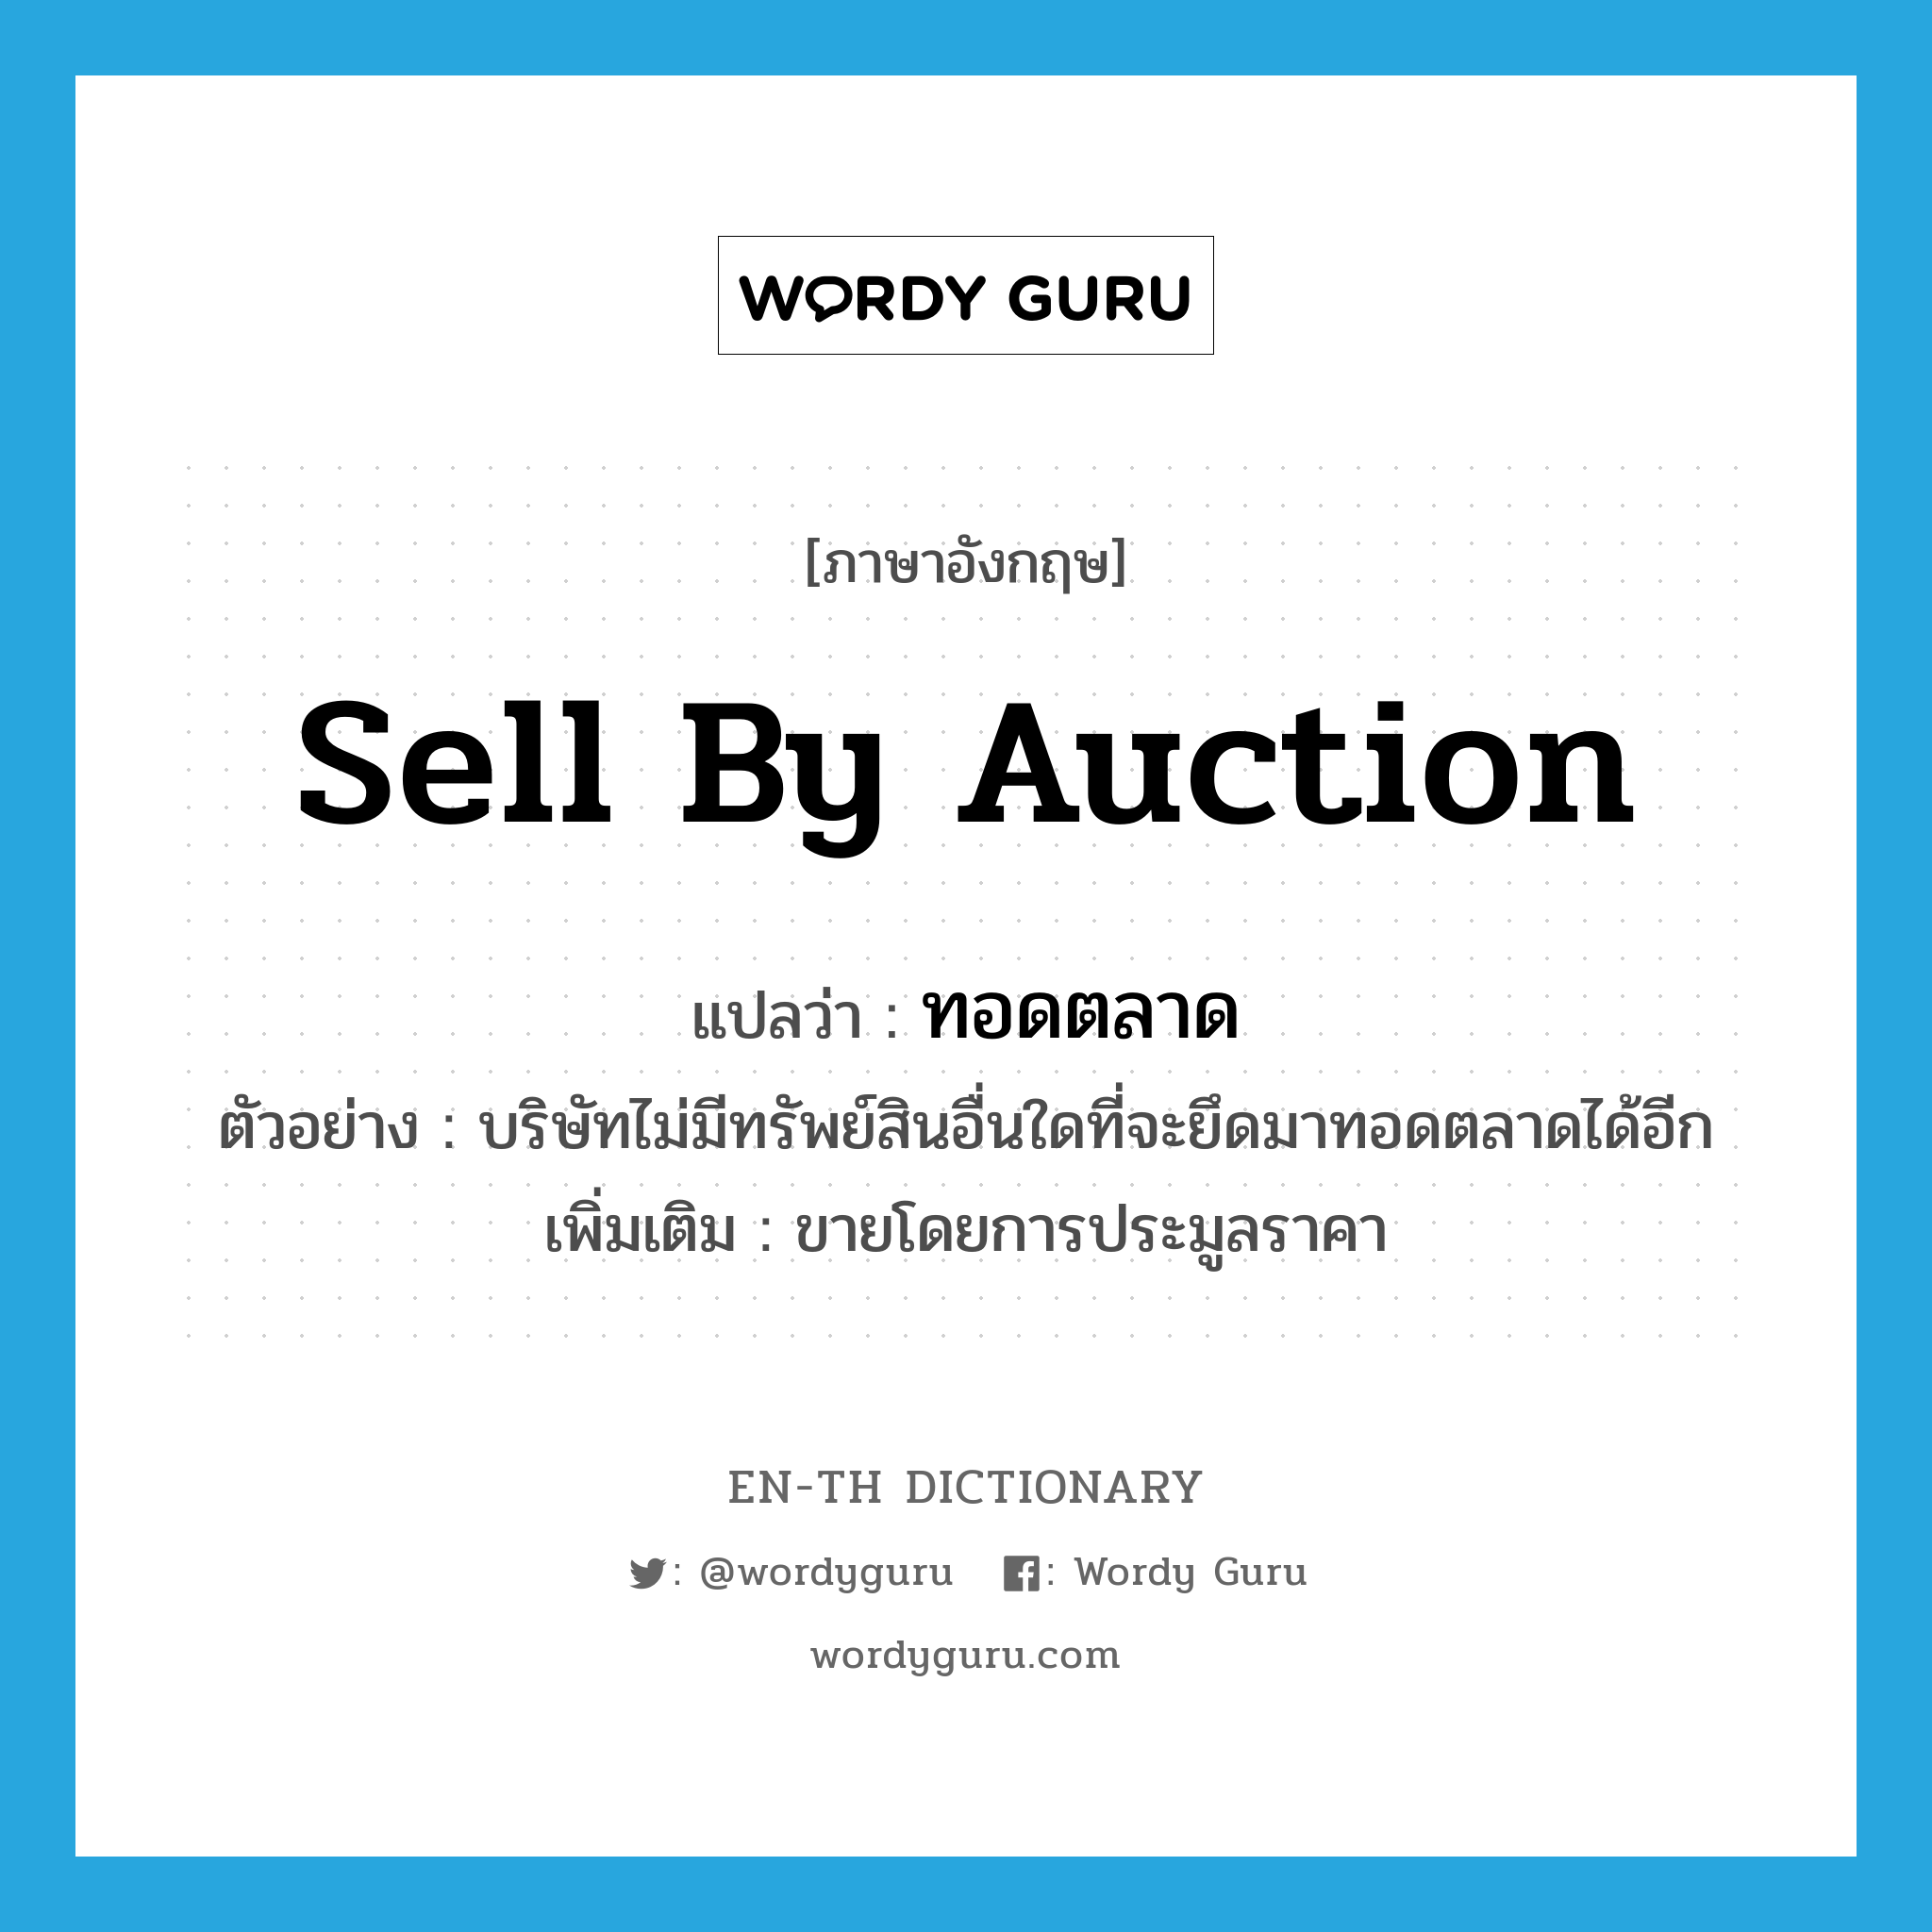 sell by auction แปลว่า?, คำศัพท์ภาษาอังกฤษ sell by auction แปลว่า ทอดตลาด ประเภท V ตัวอย่าง บริษัทไม่มีทรัพย์สินอื่นใดที่จะยึดมาทอดตลาดได้อีก เพิ่มเติม ขายโดยการประมูลราคา หมวด V